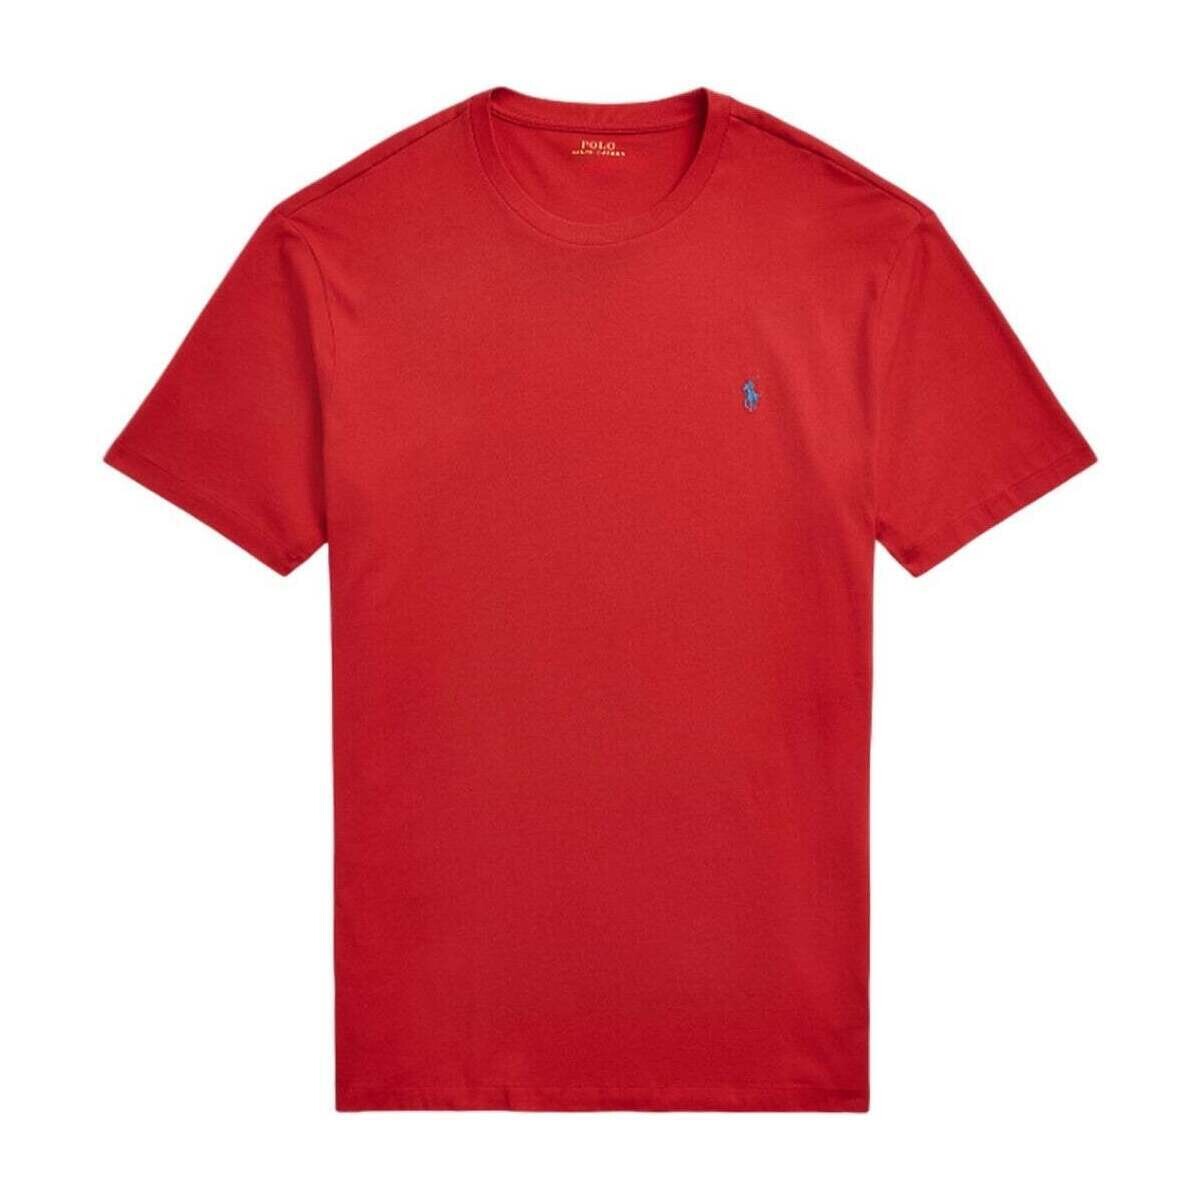 Abbigliamento Uomo T-shirt maniche corte Ralph Lauren SKU_277380_1555328 Arancio